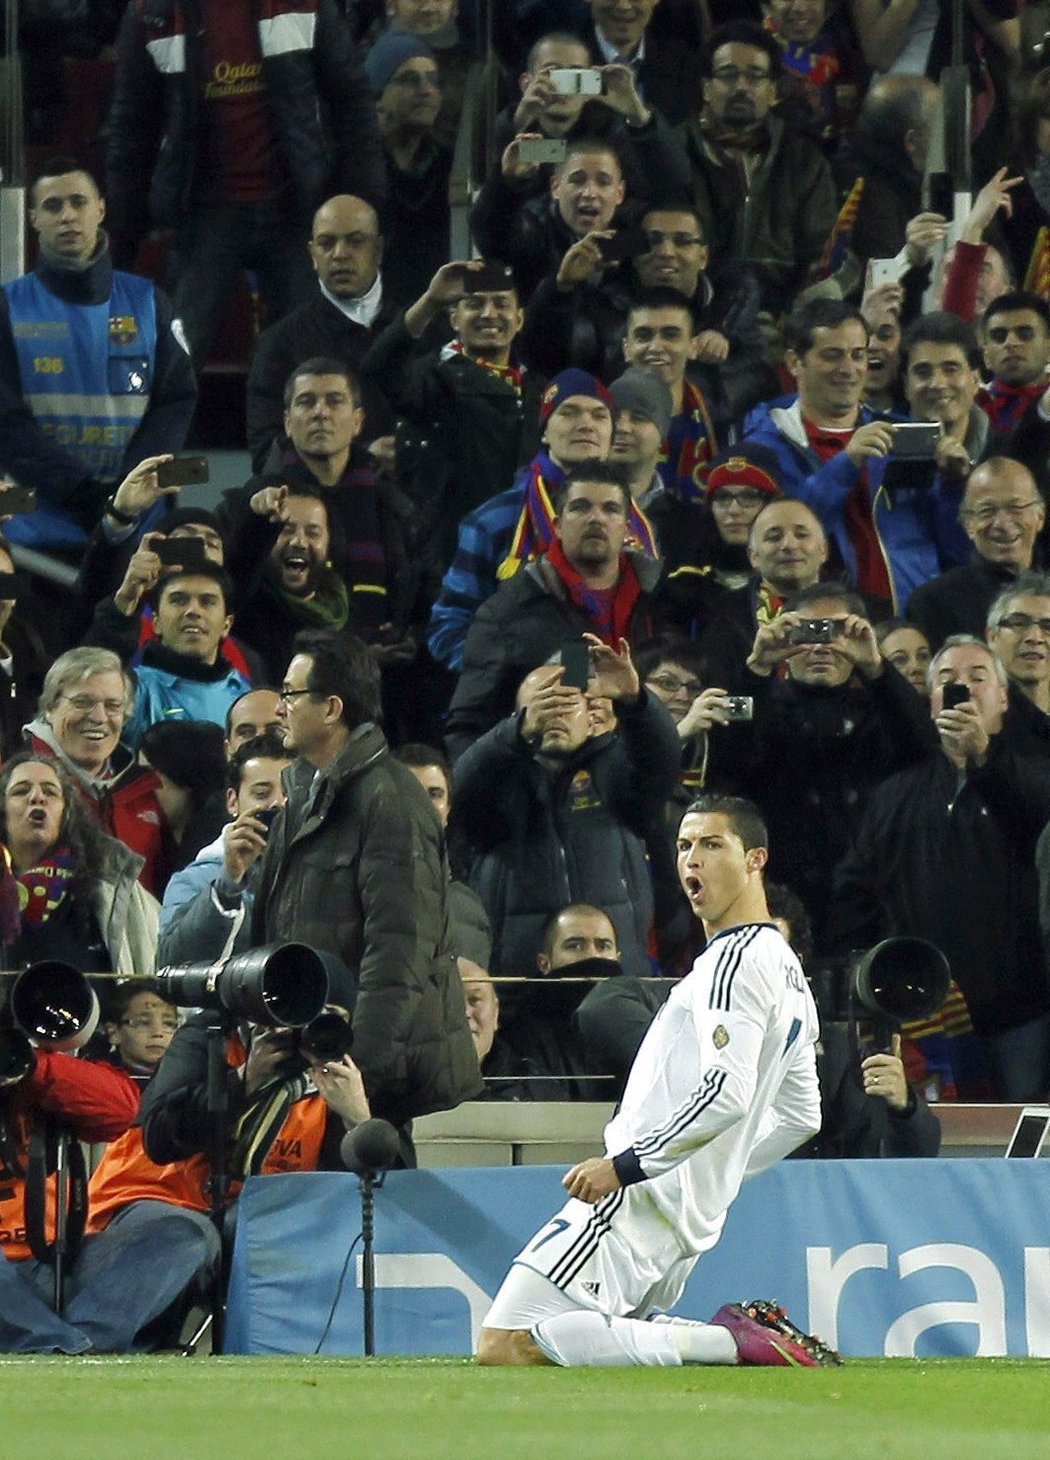 Radost Cristiana Ronalda po proměněné penaltě. Real Madrid vede ve španělském poháru na hřišti Barcelony 1:0